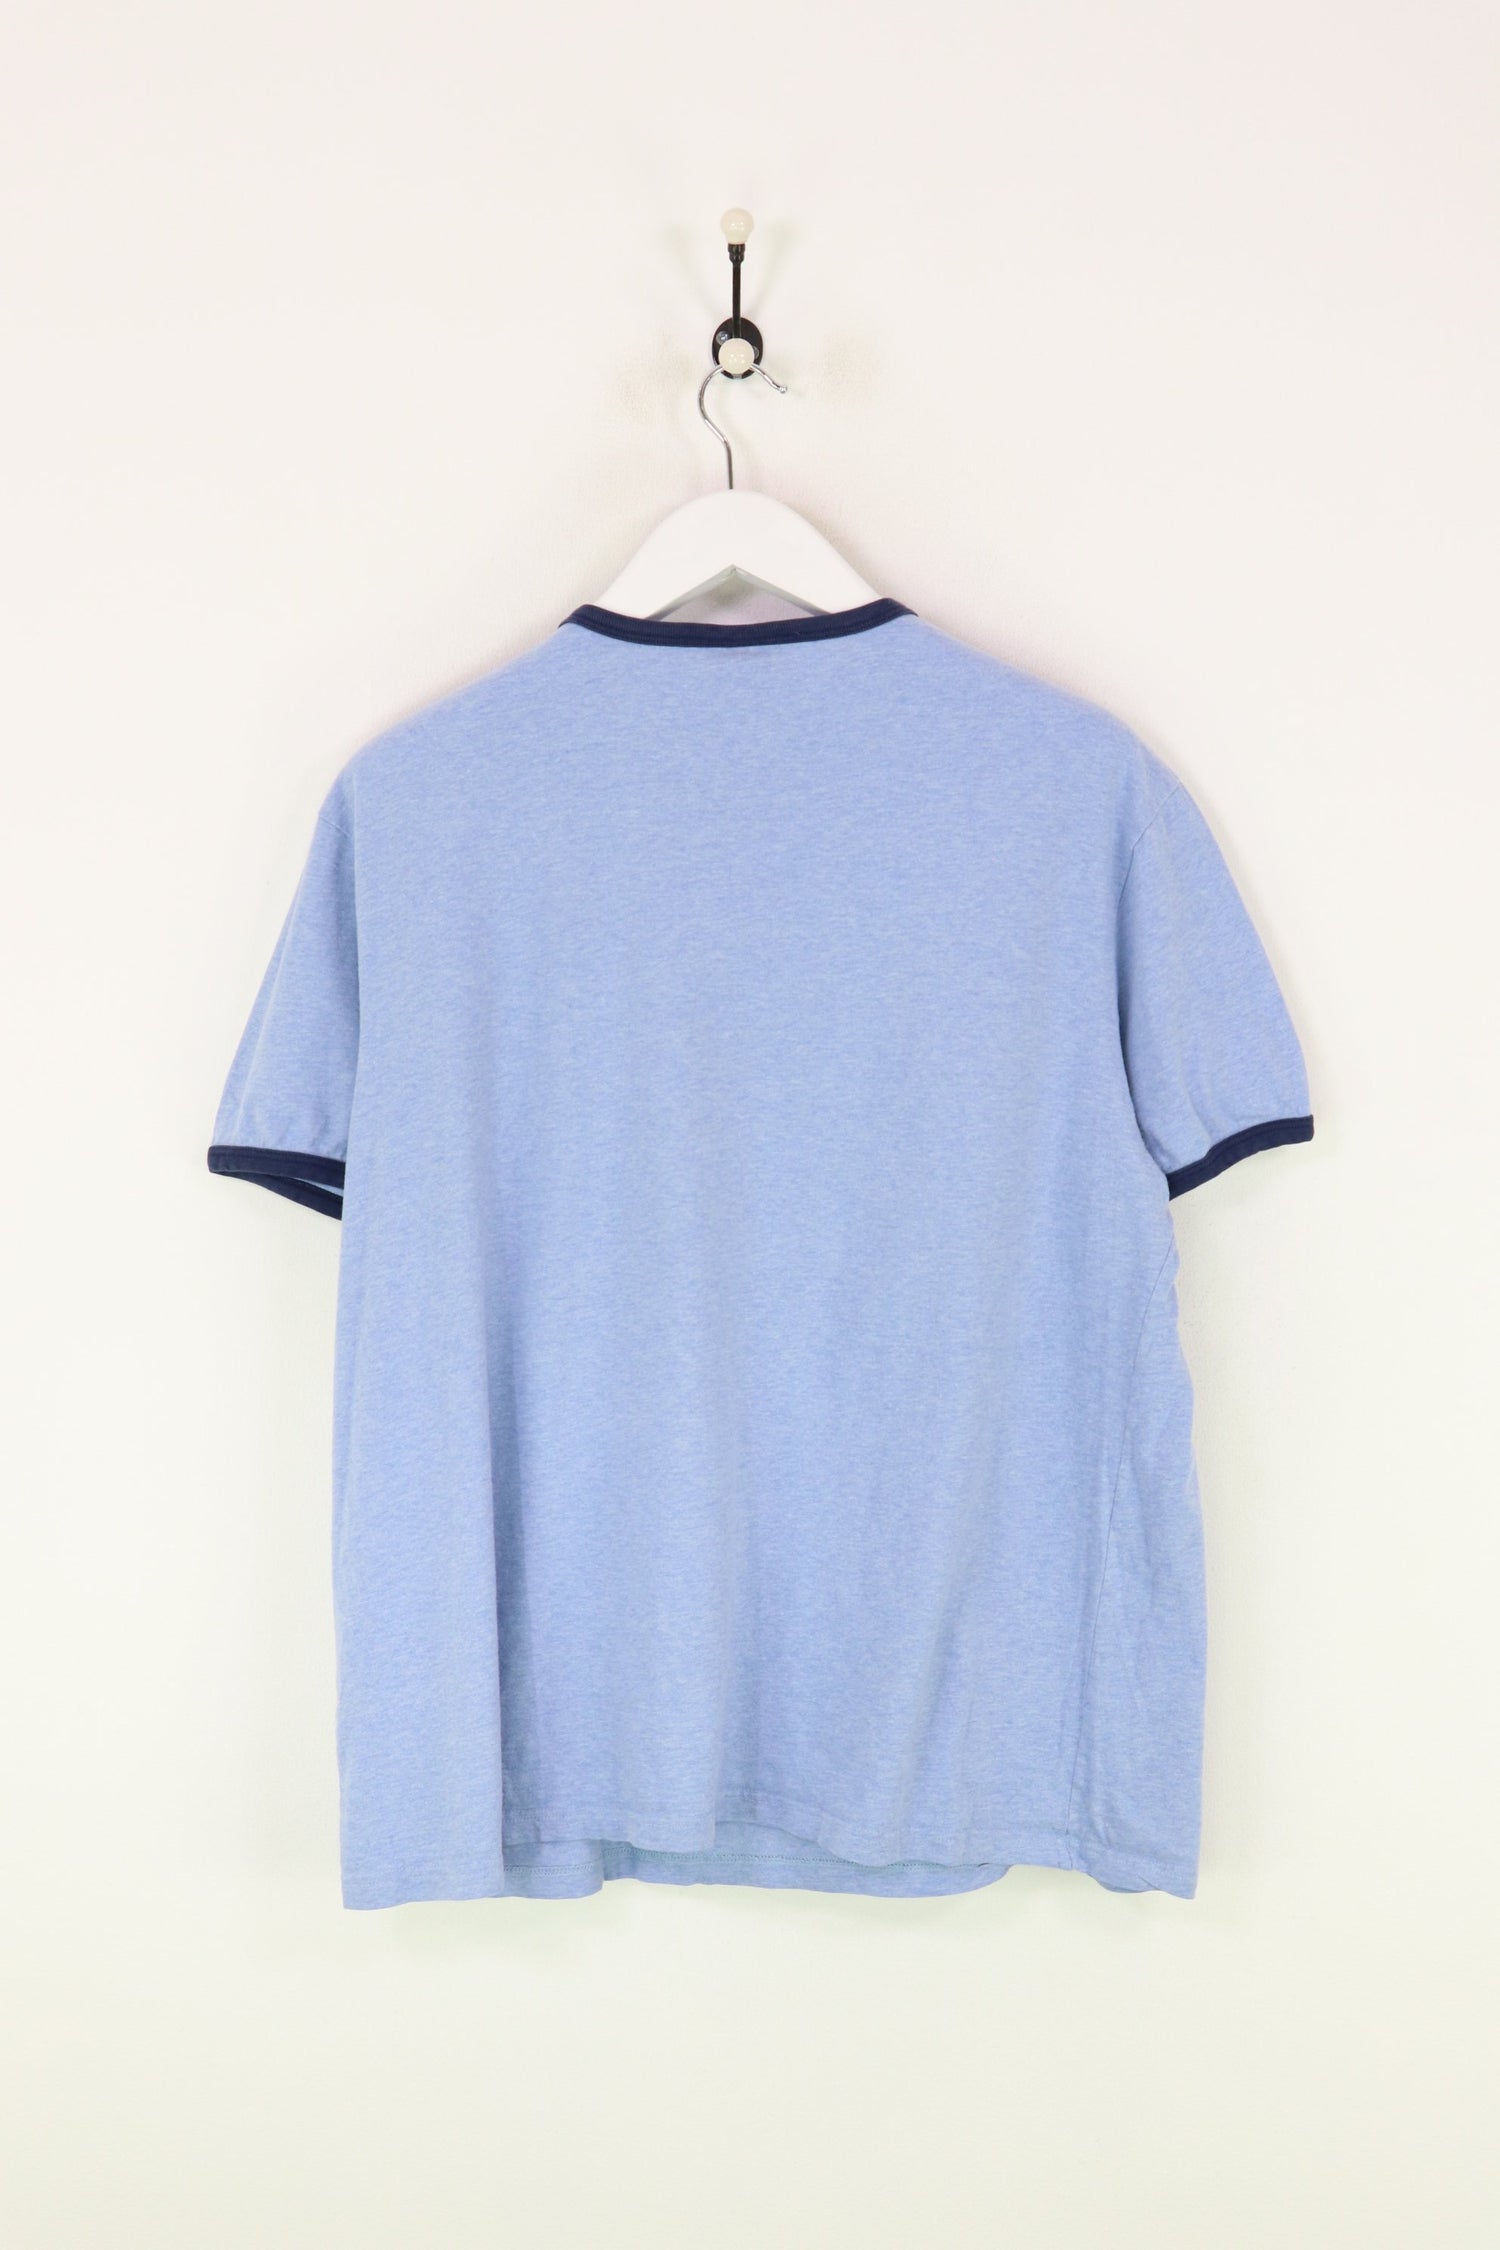 Ralph Lauren T-shirt Blue Large